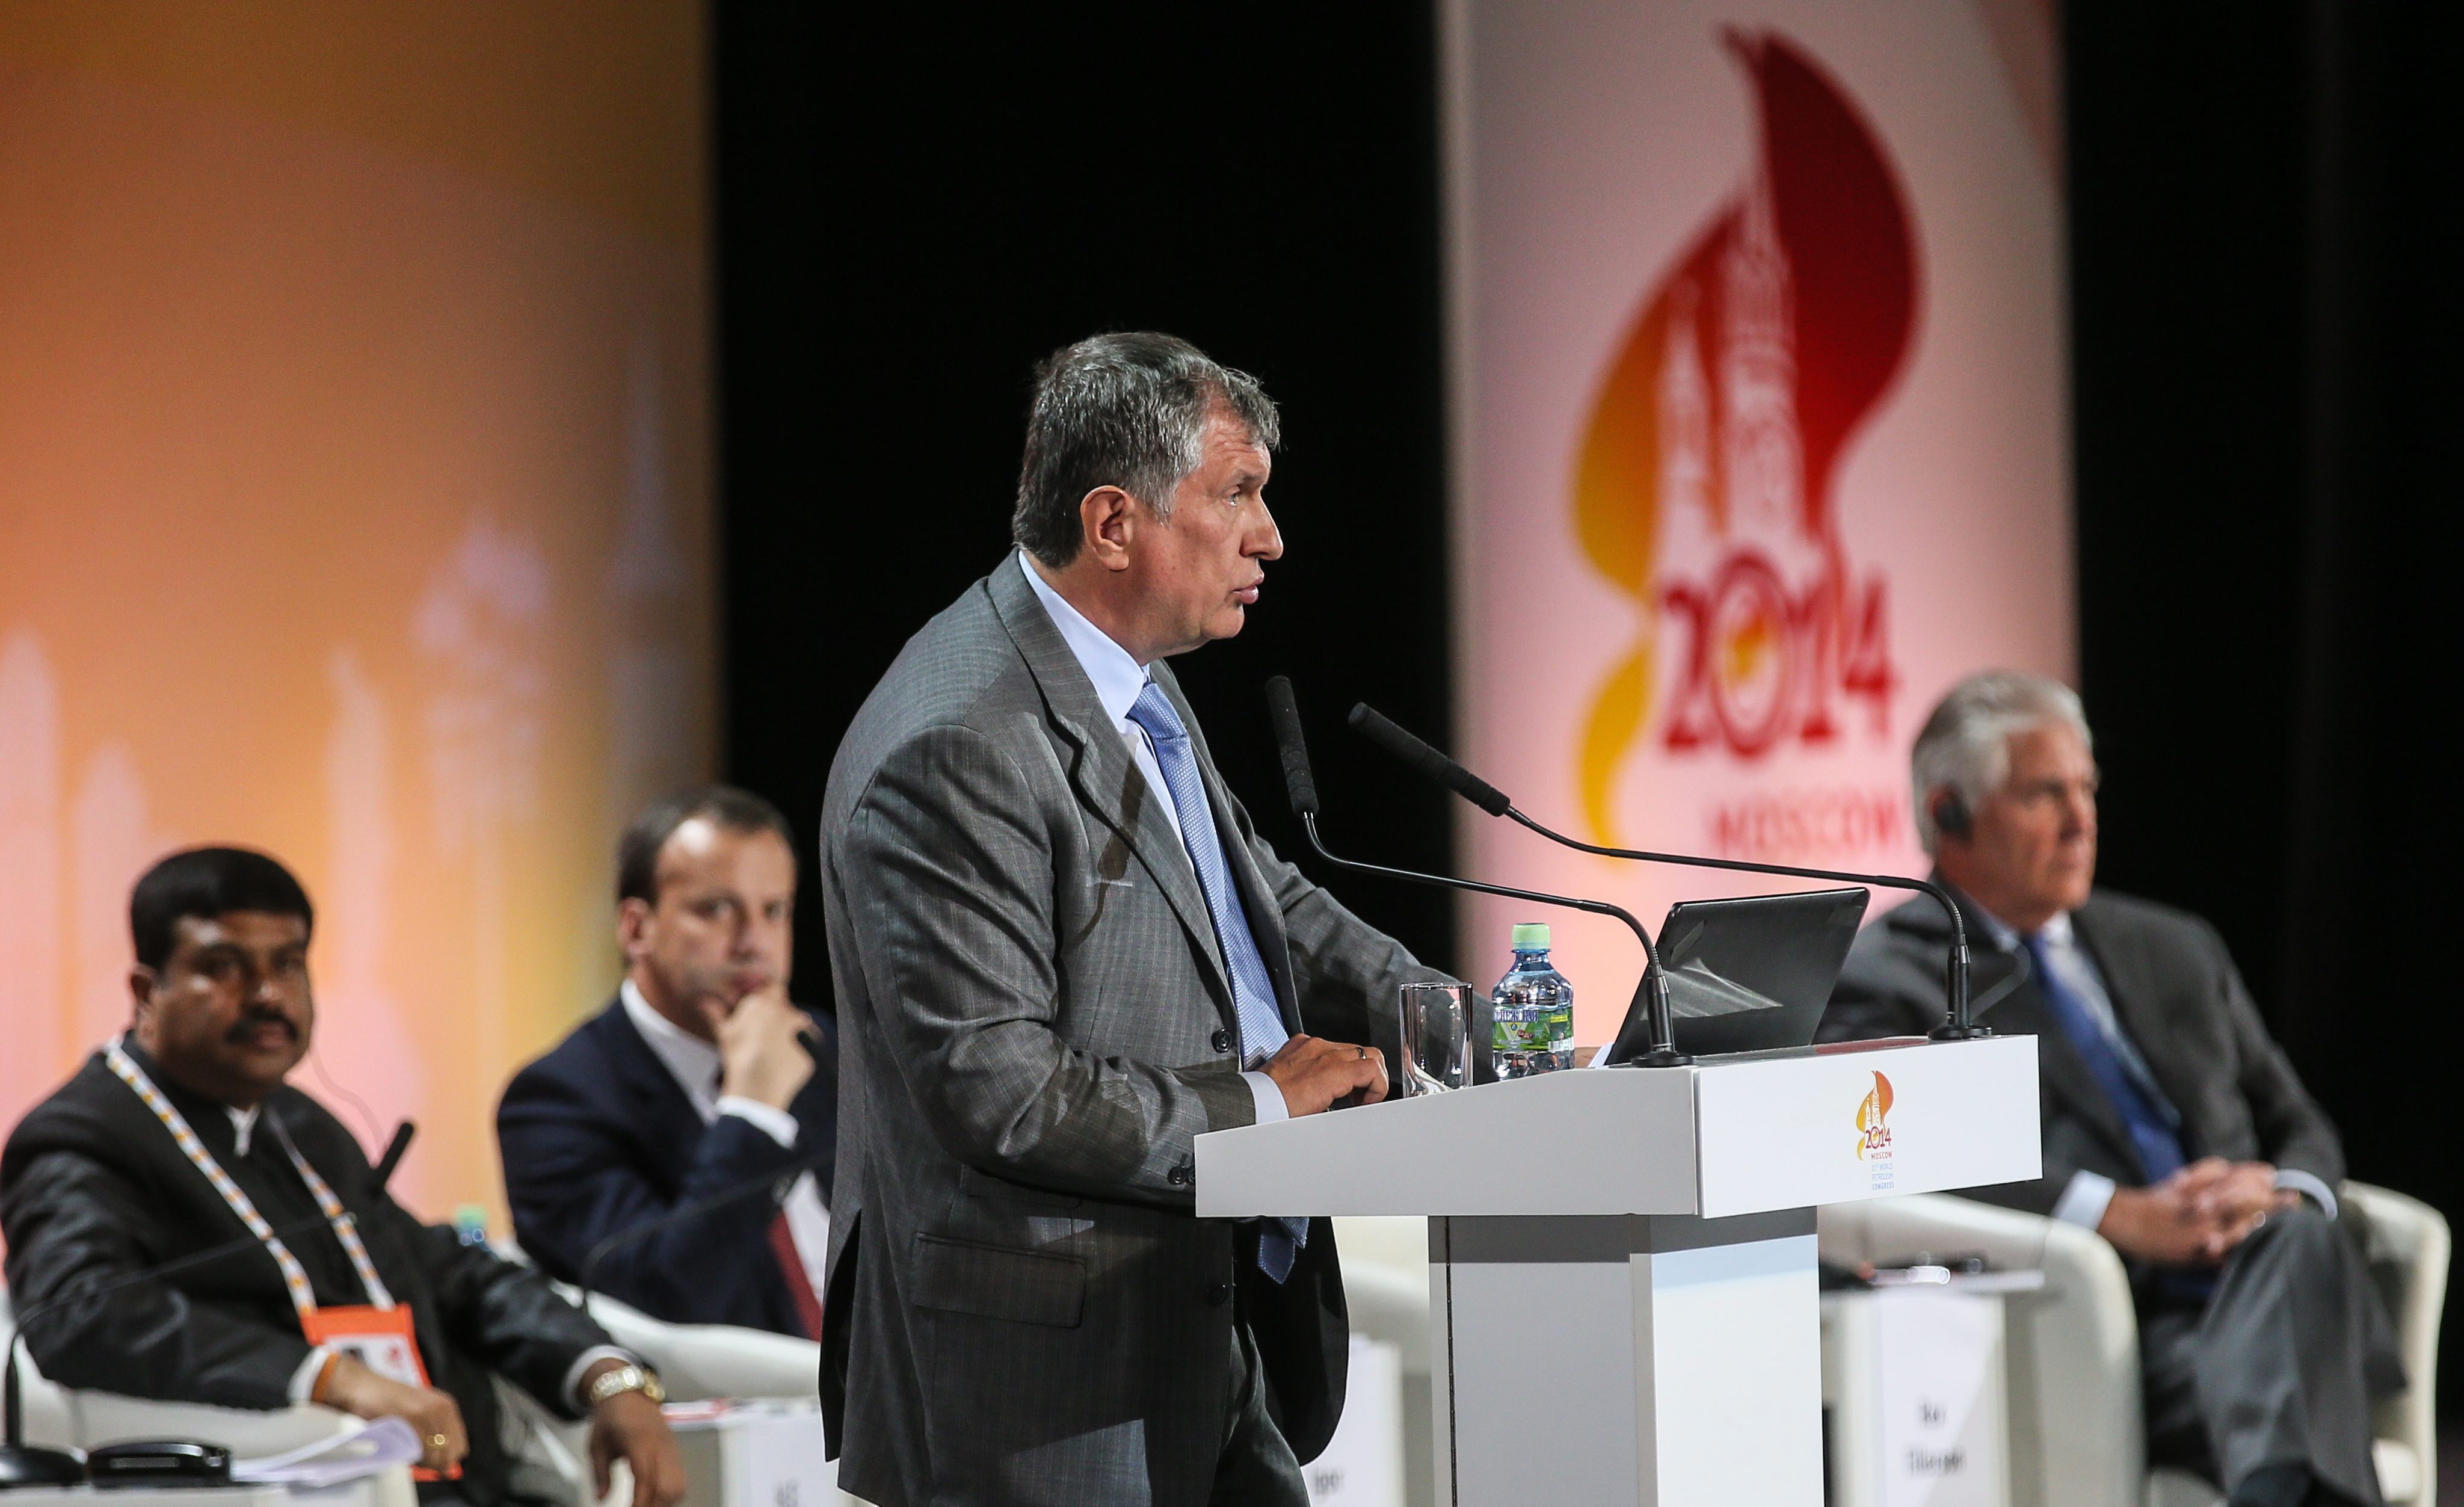 Igor Setsjin, hoofd van de Russische staatsoliemaatschappij Rosneft, spreekt in een panel waar ook Rex Tillerson, dan nog Exxon-baas, te gast is op een conferentie in Moskou in juni 2014. Foto: EPA